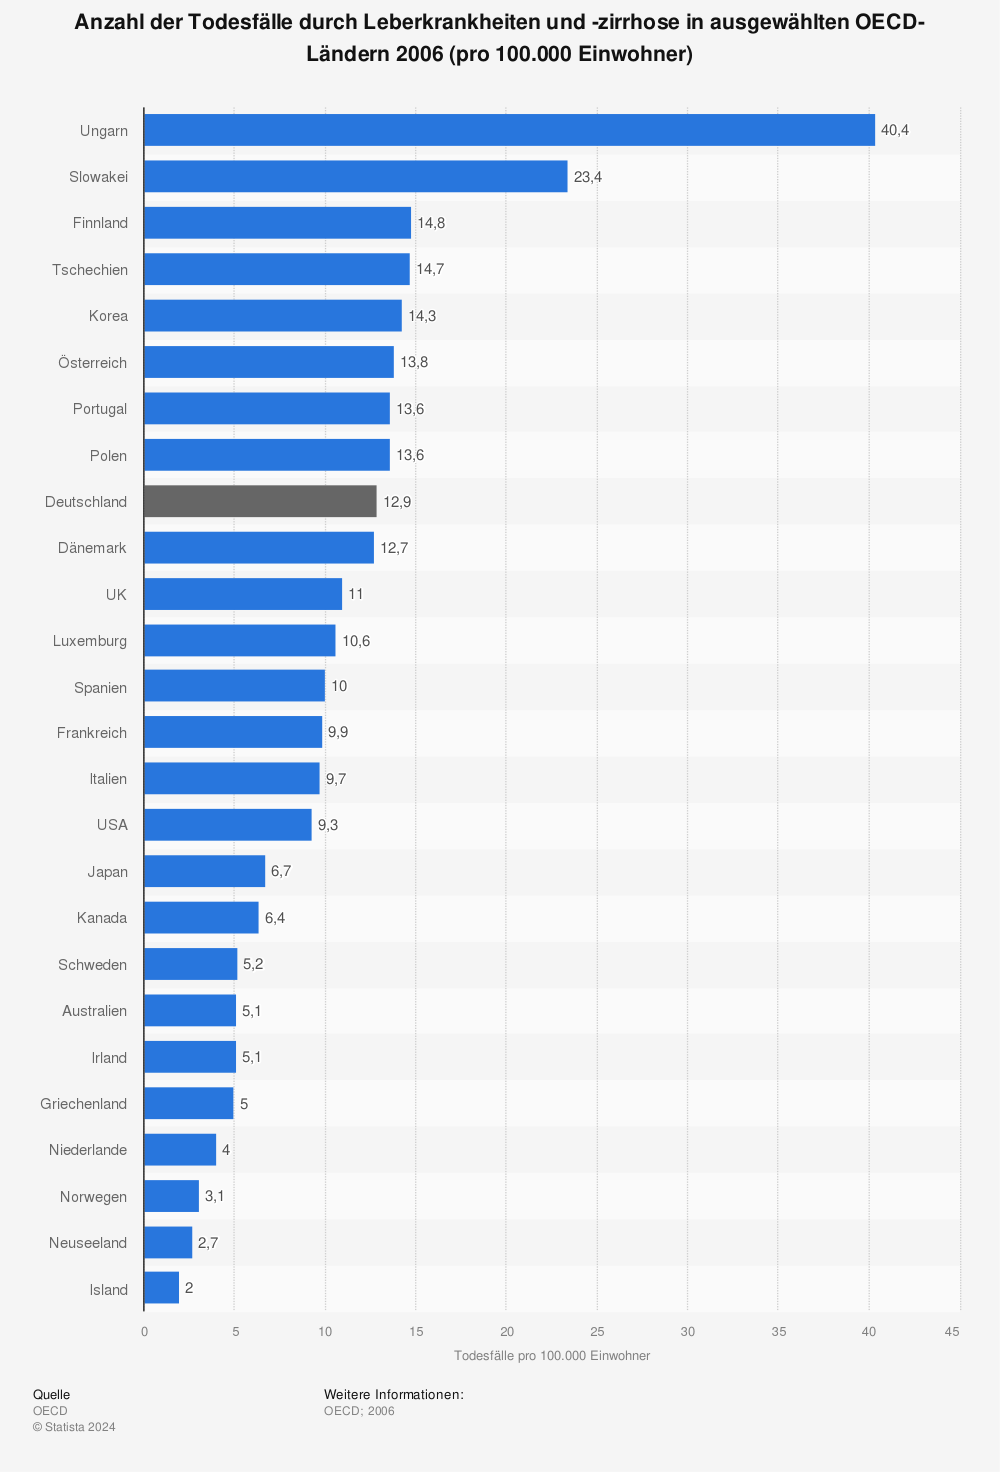 Statistik: Anzahl der Todesfälle durch Leberkrankheiten und -zirrhose in ausgewählten OECD-Ländern 2006 (pro 100.000 Einwohner) | Statista